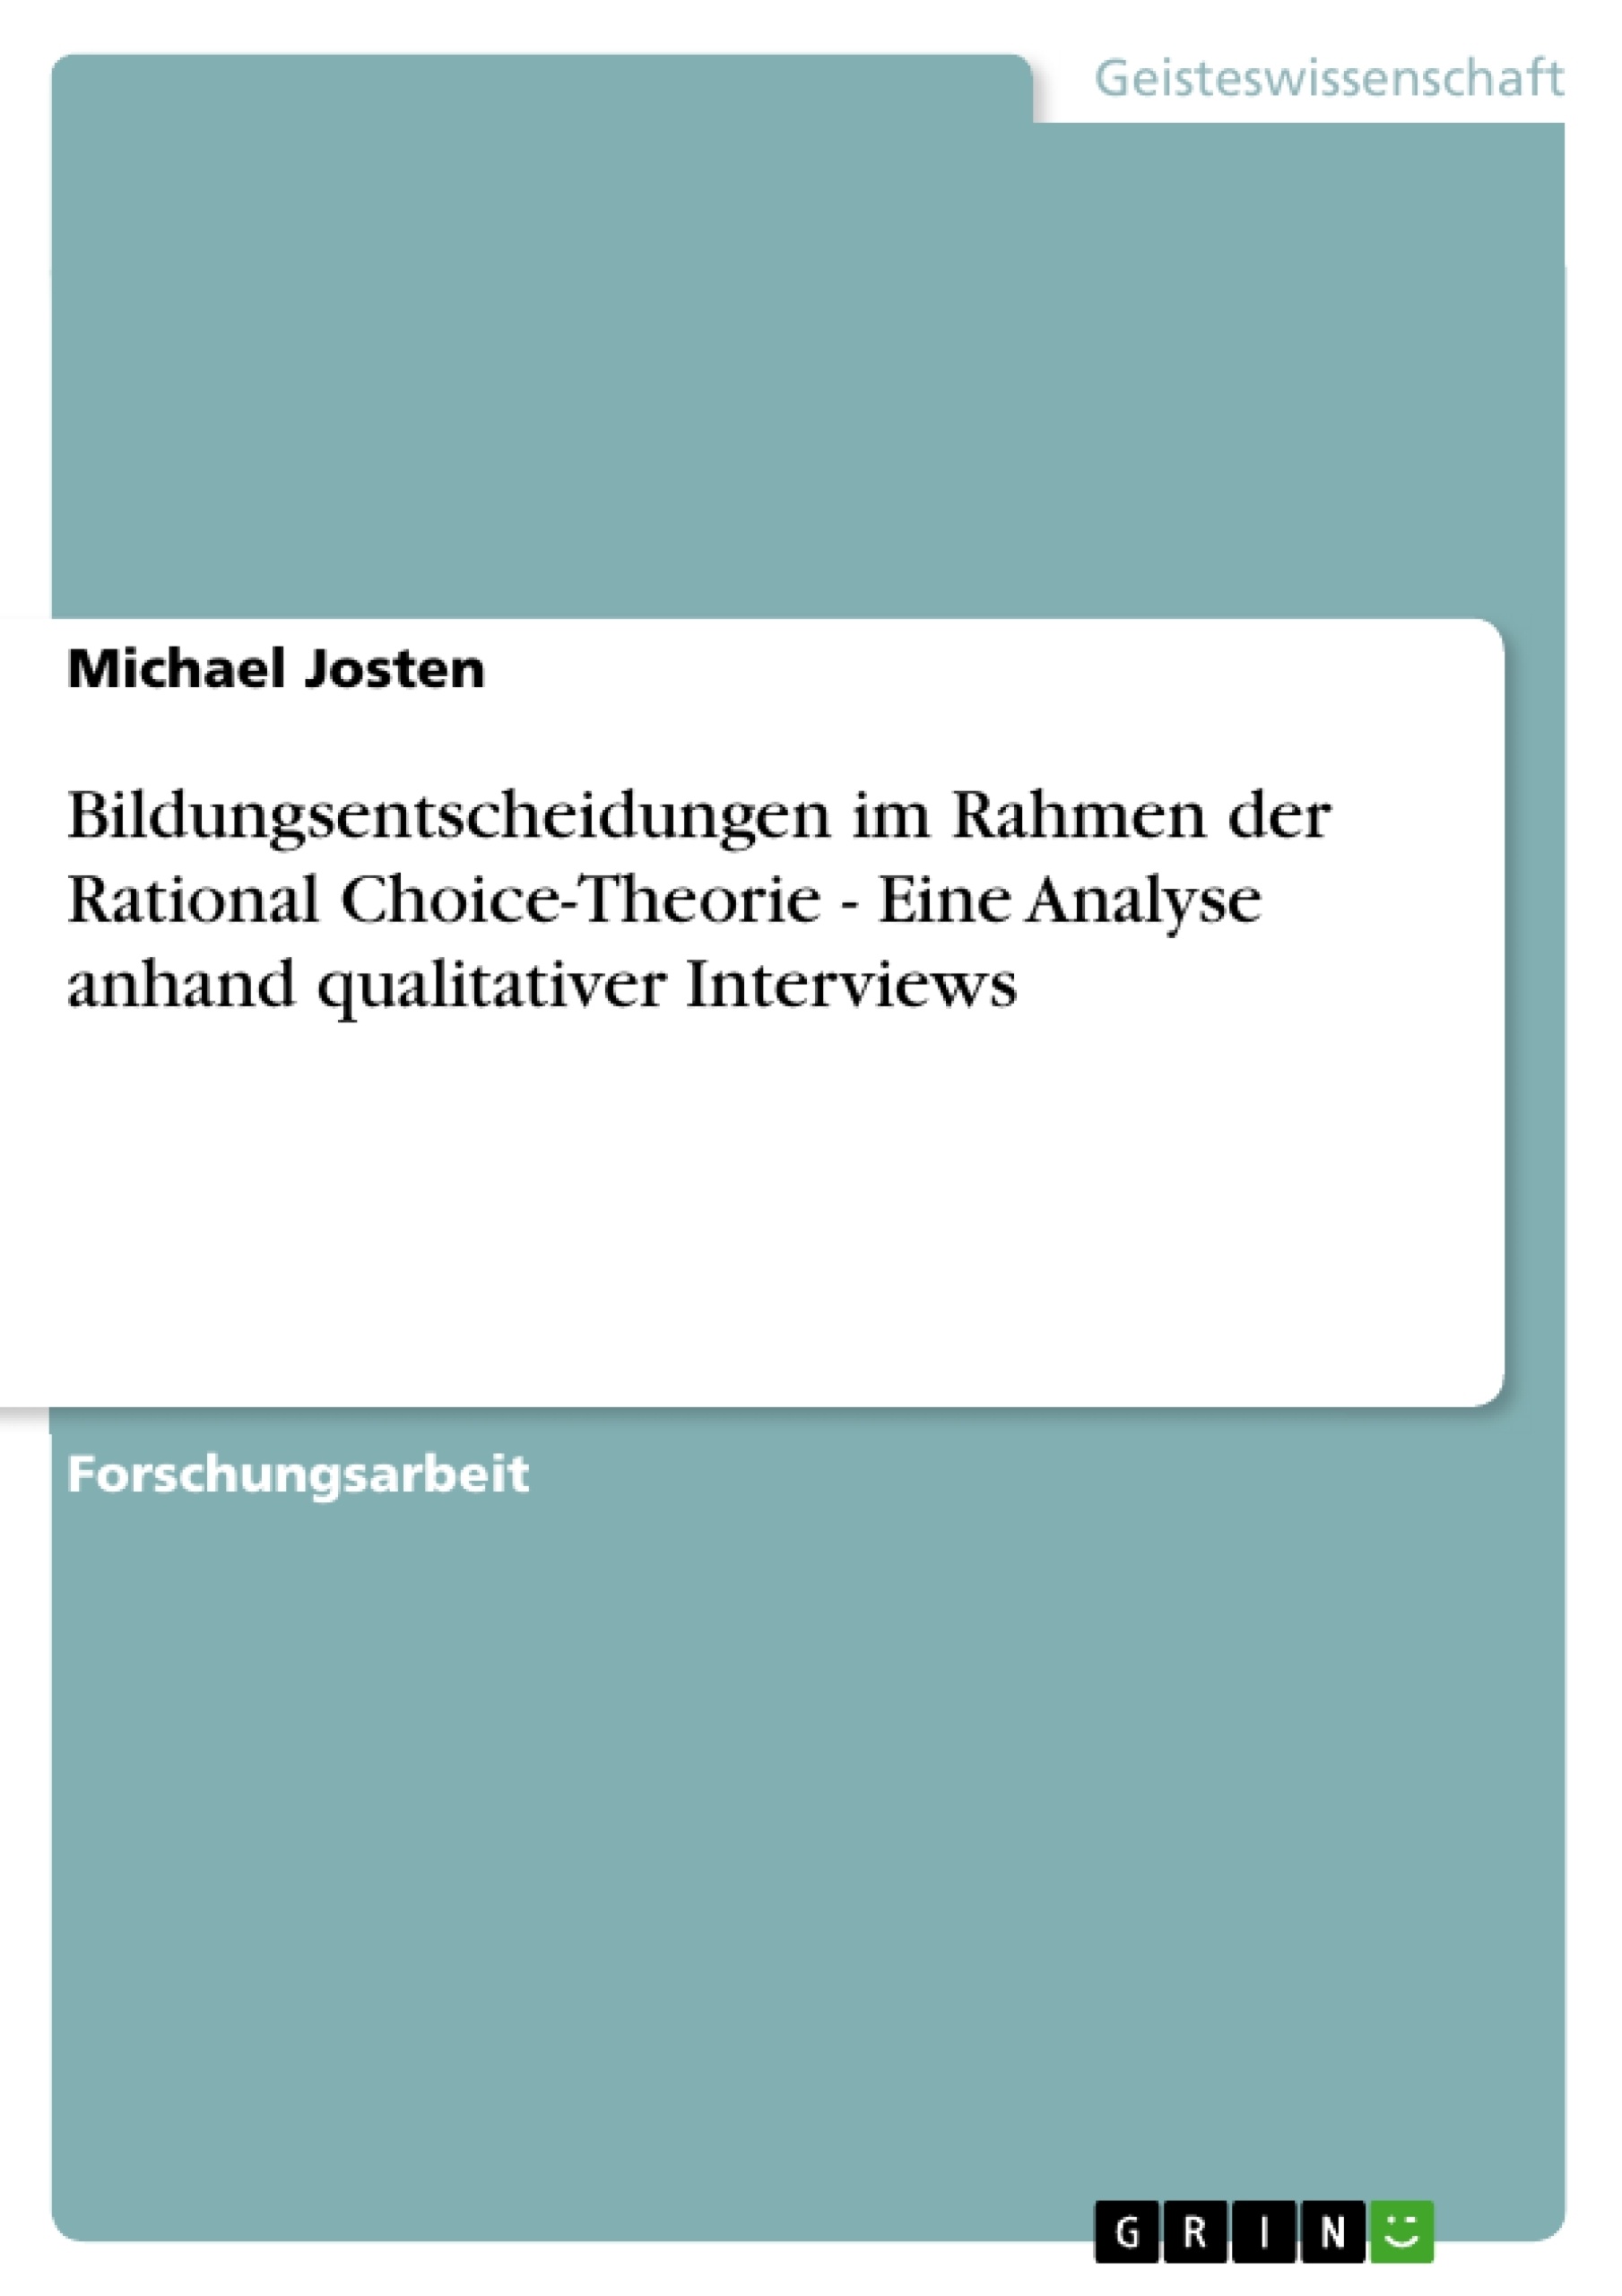 Titre: Bildungsentscheidungen im Rahmen der Rational Choice-Theorie - Eine Analyse anhand qualitativer Interviews